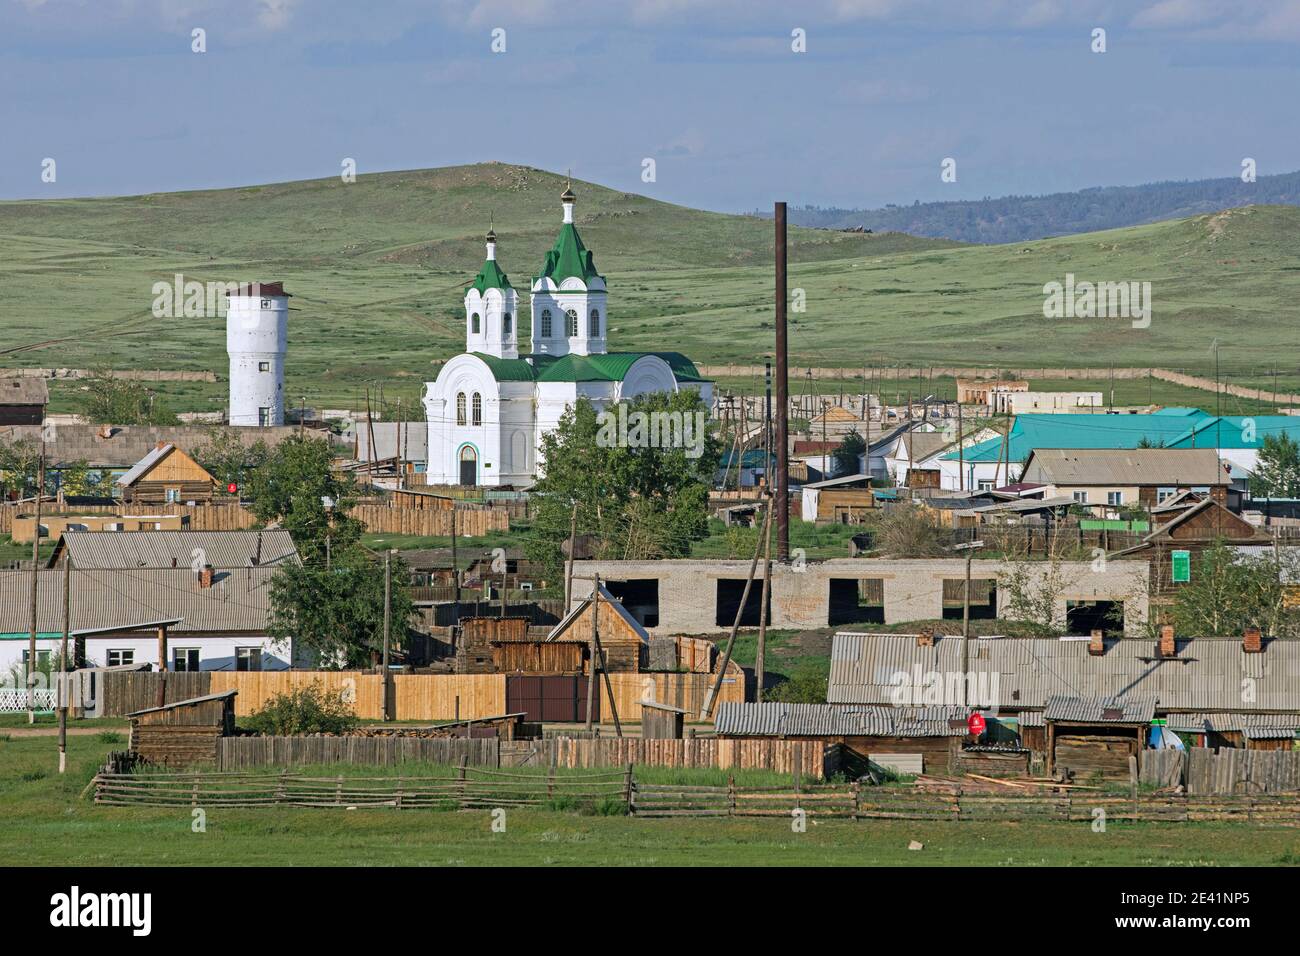 Typische weiße orthodoxe Kirche mit grünem Dach in einem kleinen Dorf im ländlichen Südsibirien, in der Nähe des Baikalsees zwischen Ulan Ude und Irkutsk, Russland Stockfoto